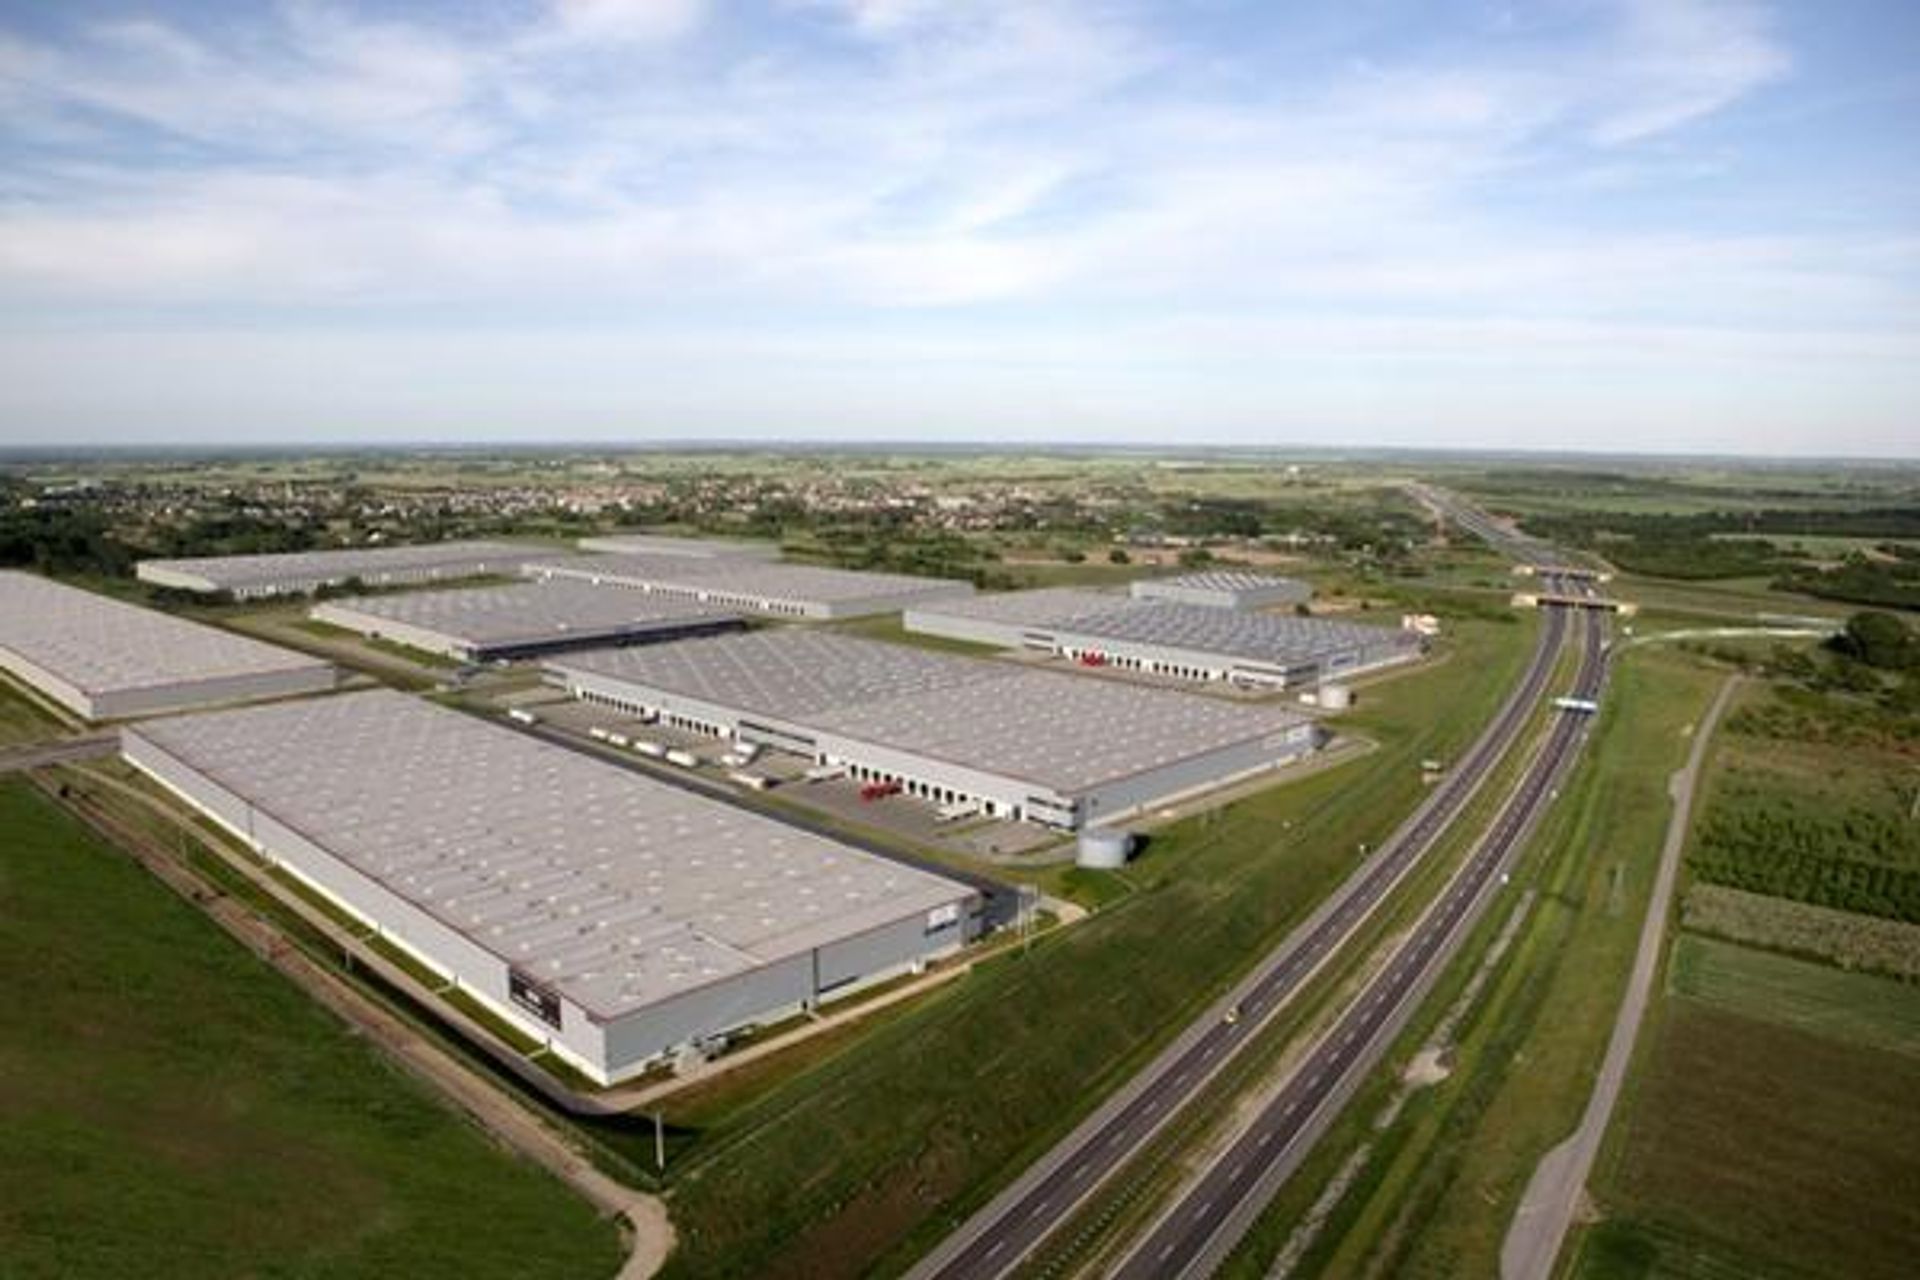  SEGRO European Logistics Partnership kupuje nieruchomości magazynowe Tristan Capital Partners w Polsce za 100 mln euro